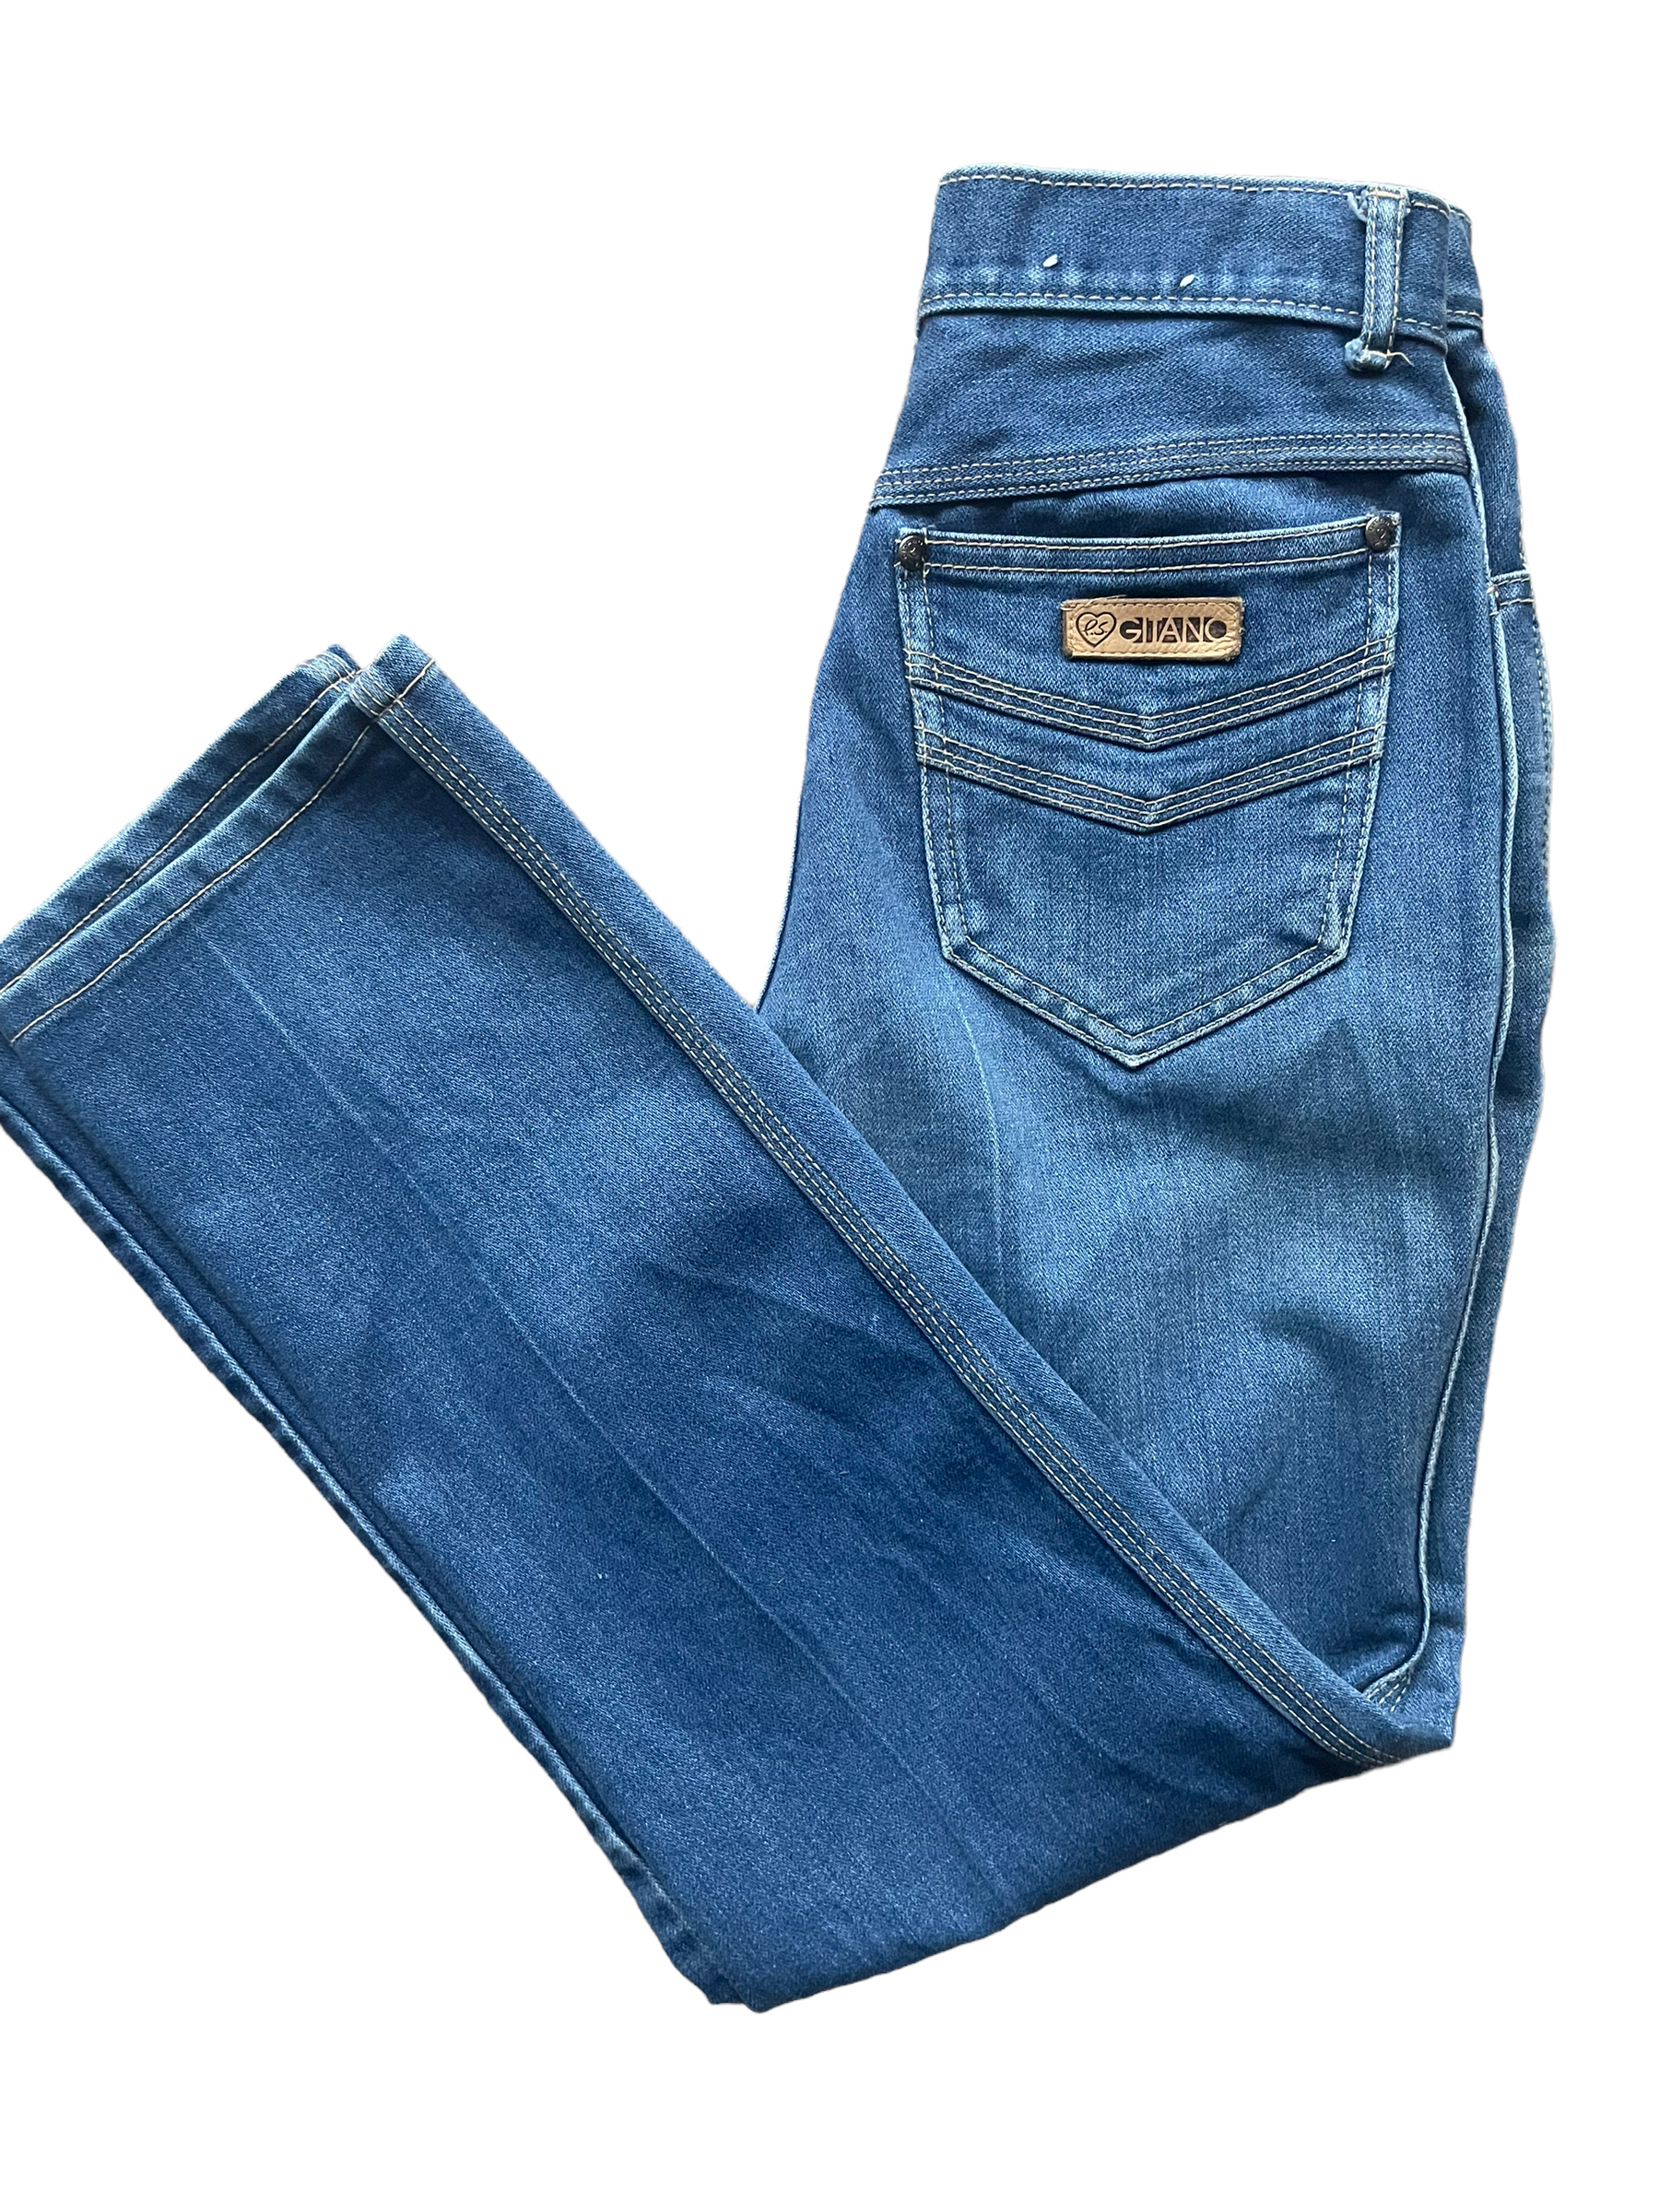 Vintage 1980s Gitano Ladies Jeans | Barn Owl Seattle | Vintage Ladies Denim  and Pants